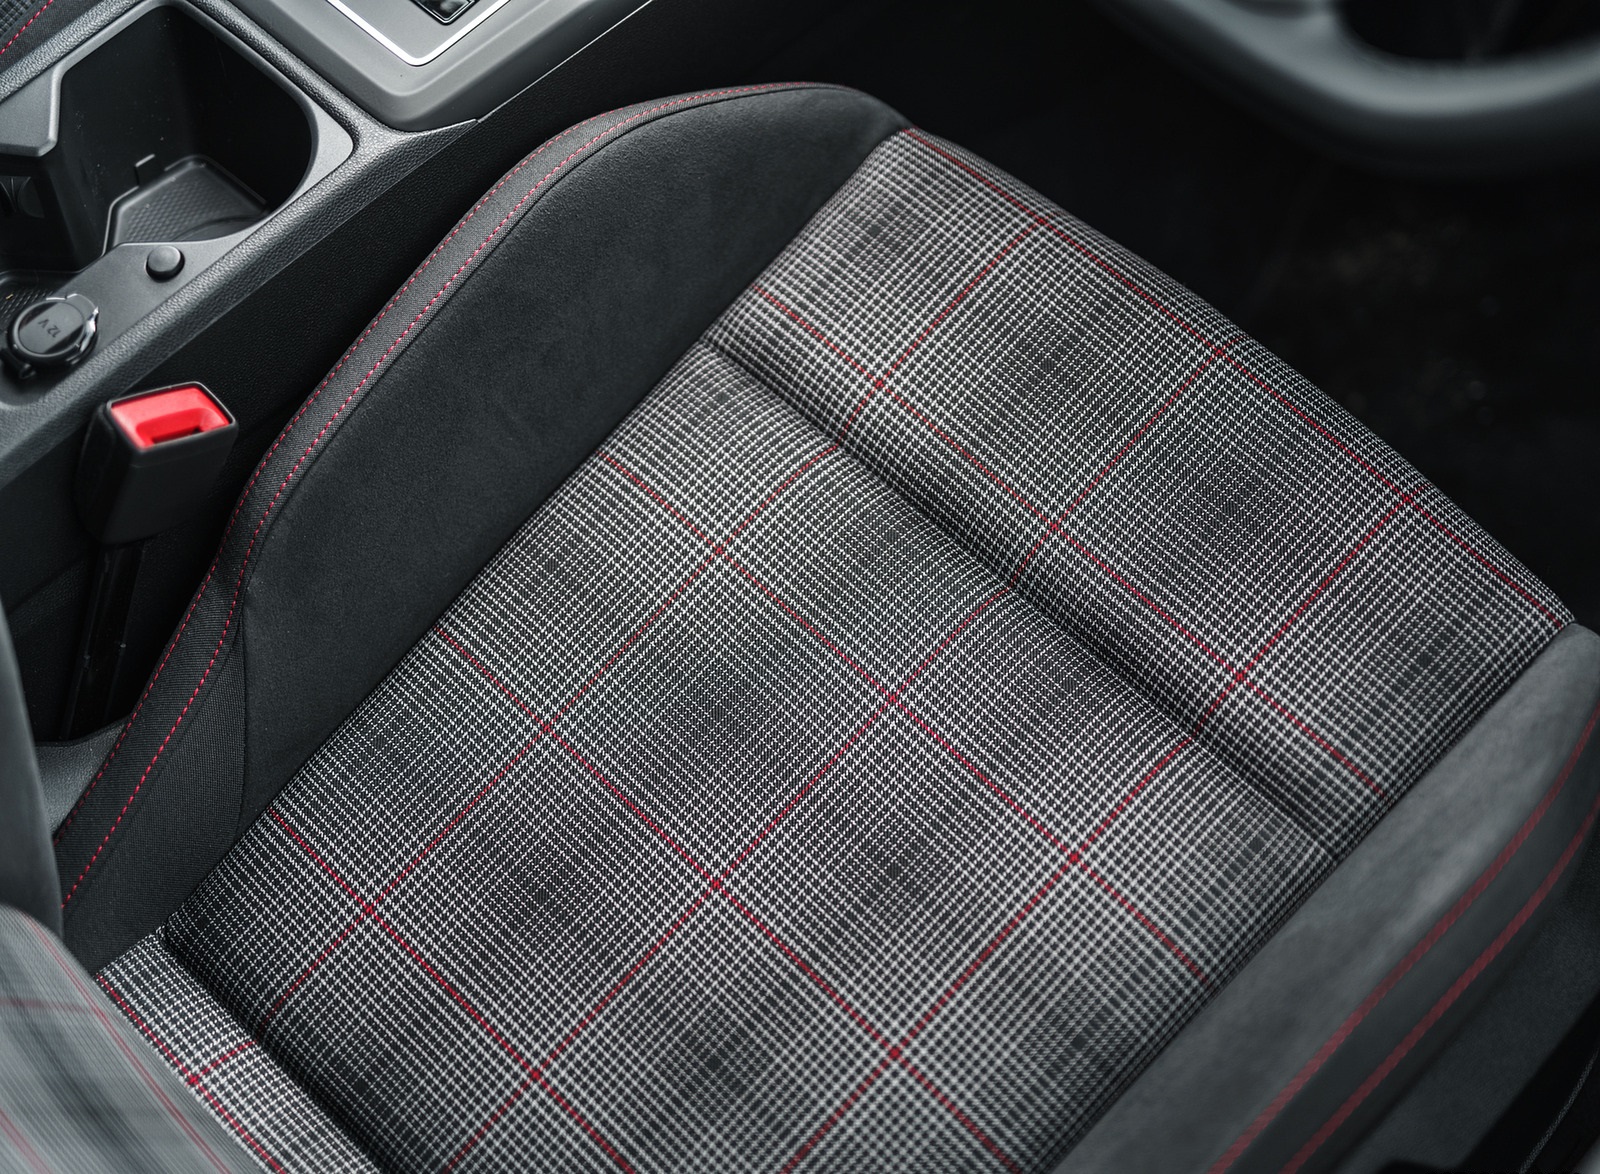 2021 Volkswagen Golf GTI (UK-Spec) Interior Front Seats Wallpapers #89 of 95